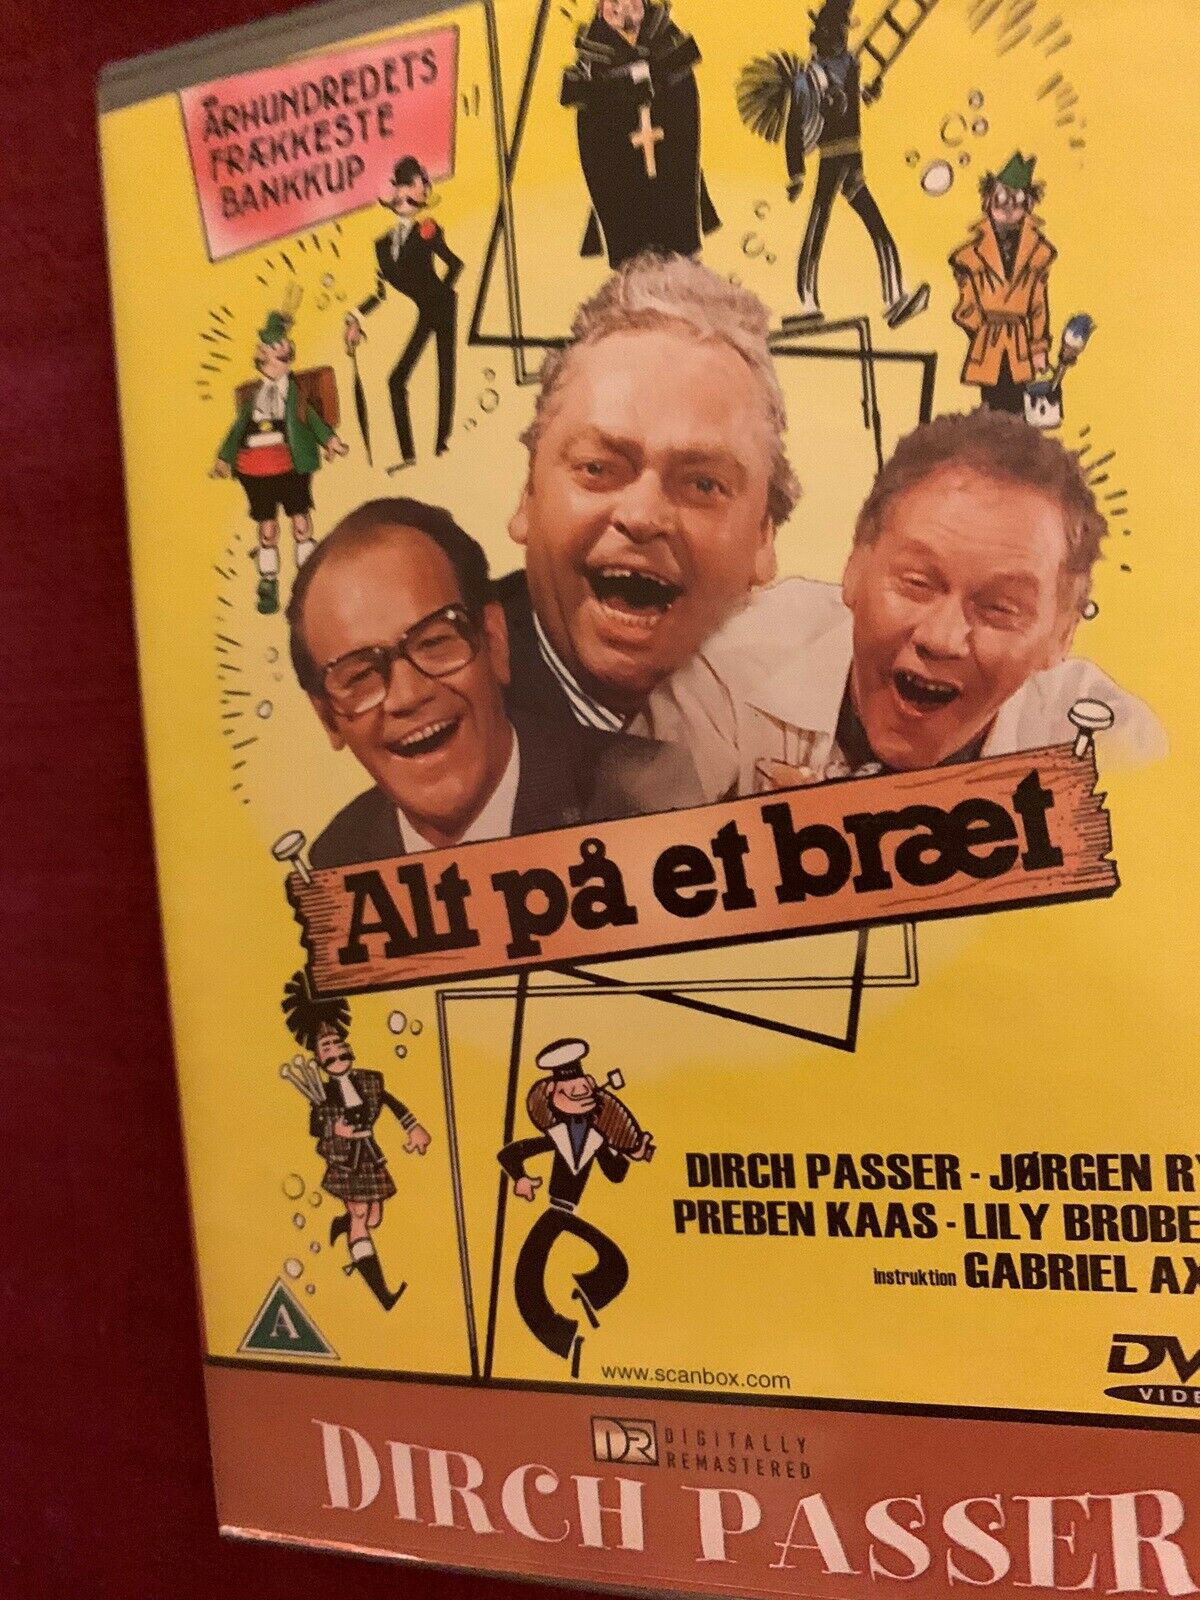 flyde over prik hjælp Alt på et bræt, DVD, komedie – dba.dk – Køb og Salg af Nyt og Brugt